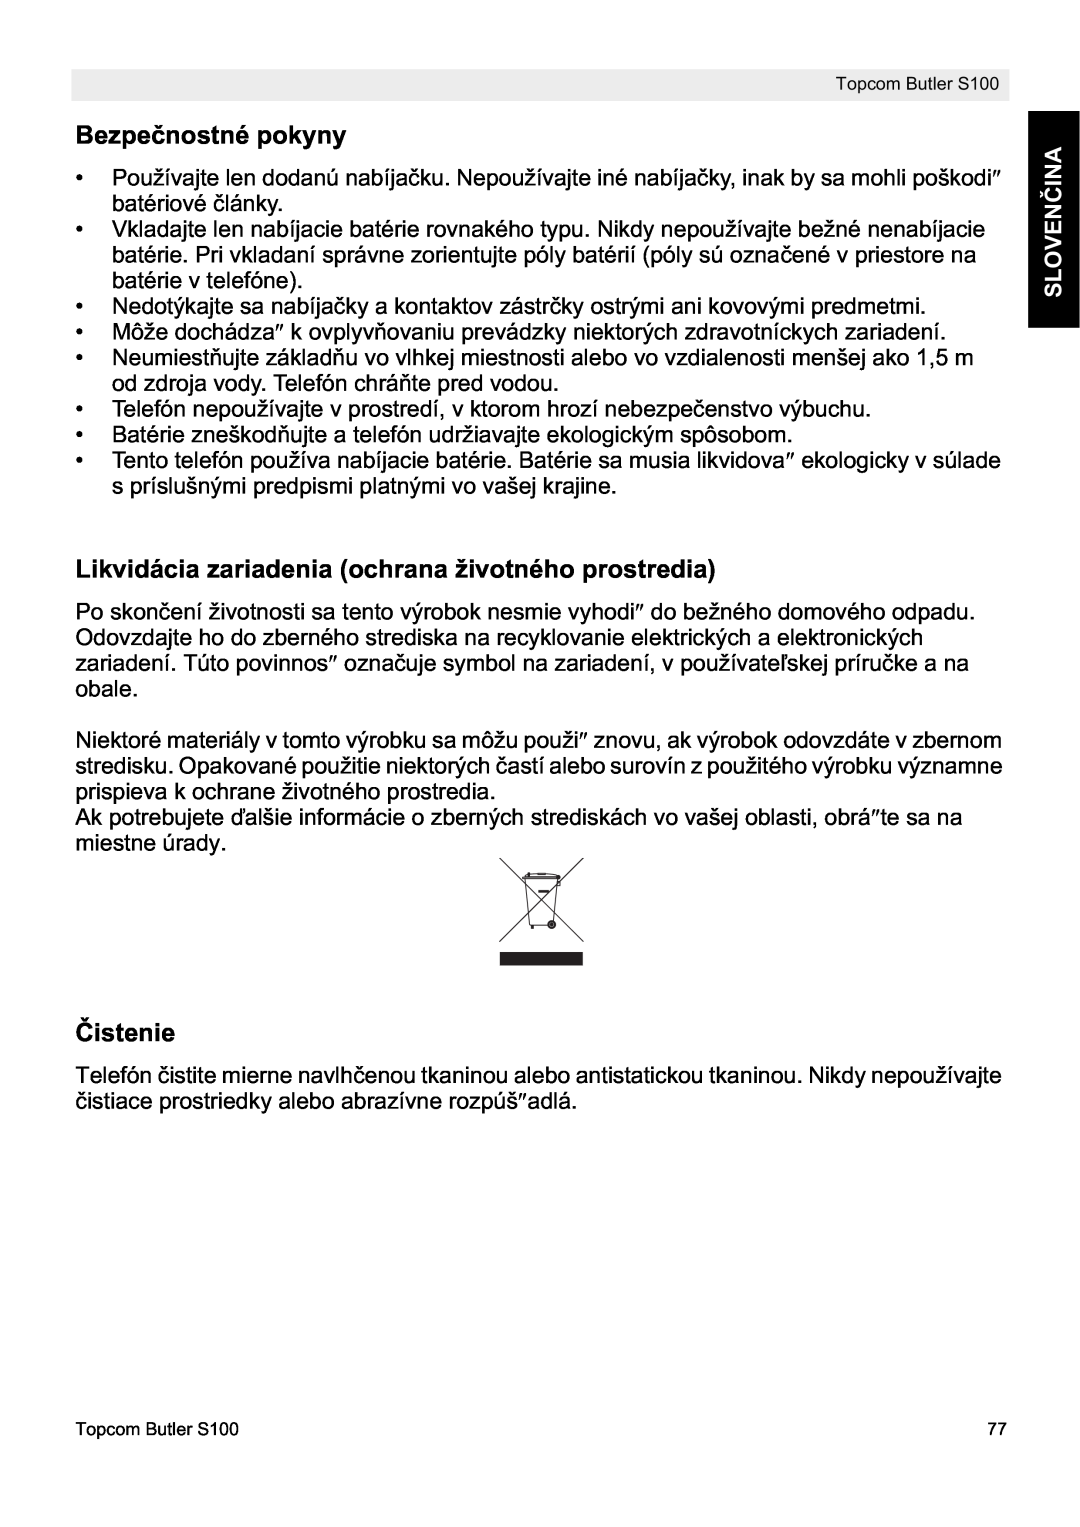 Topcom S100 Bezpeþnostné pokyny, Likvidácia zariadenia ochrana životného prostredia, ýistenie, SLOVENýINA 